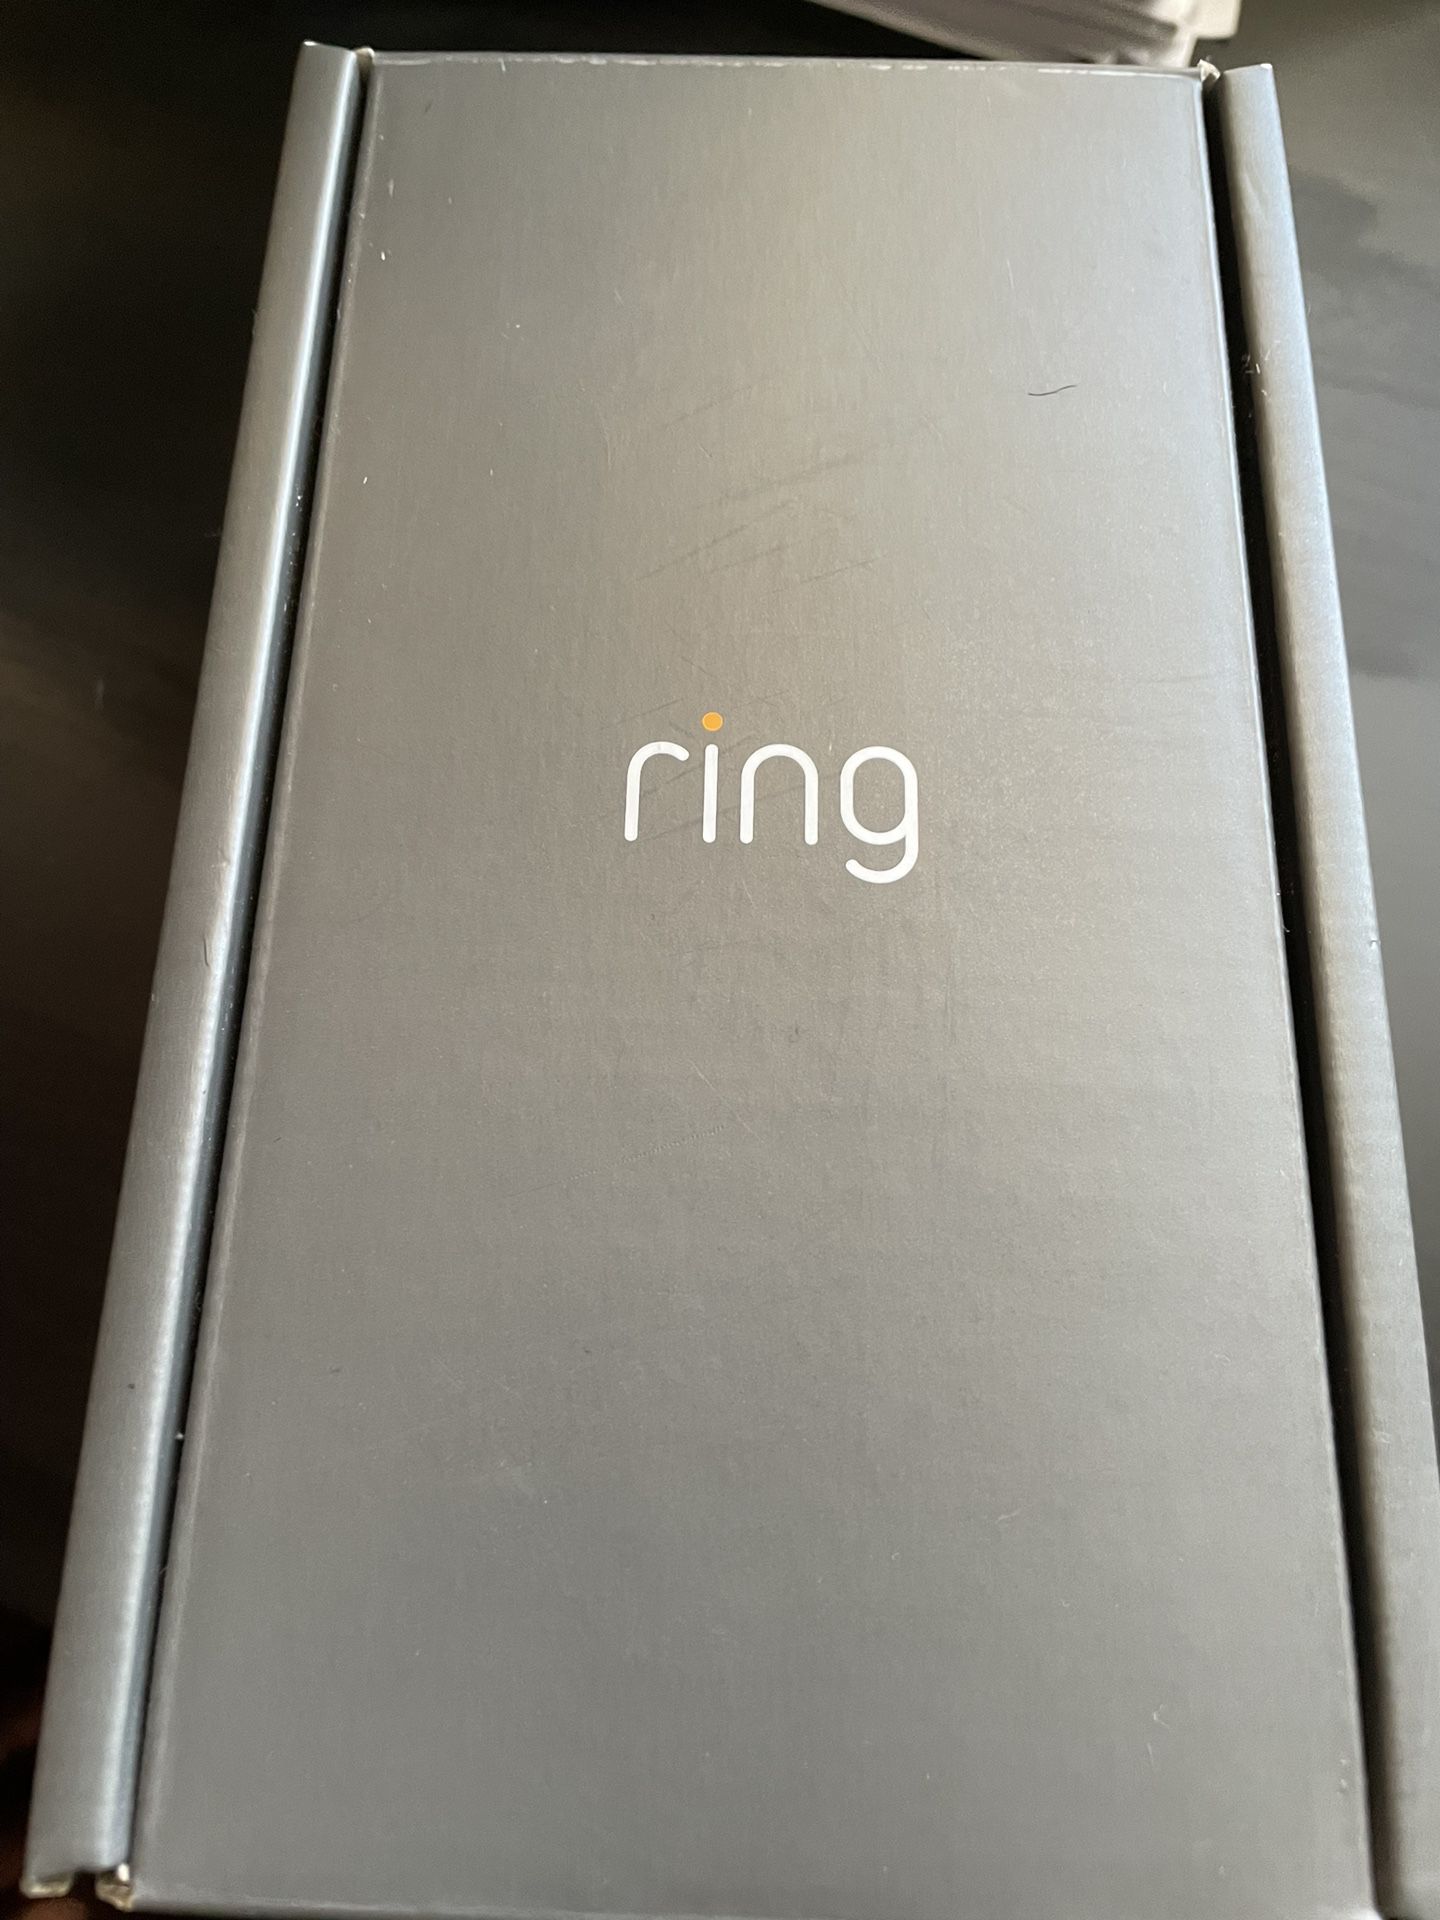 Ring Doorbell Camera 